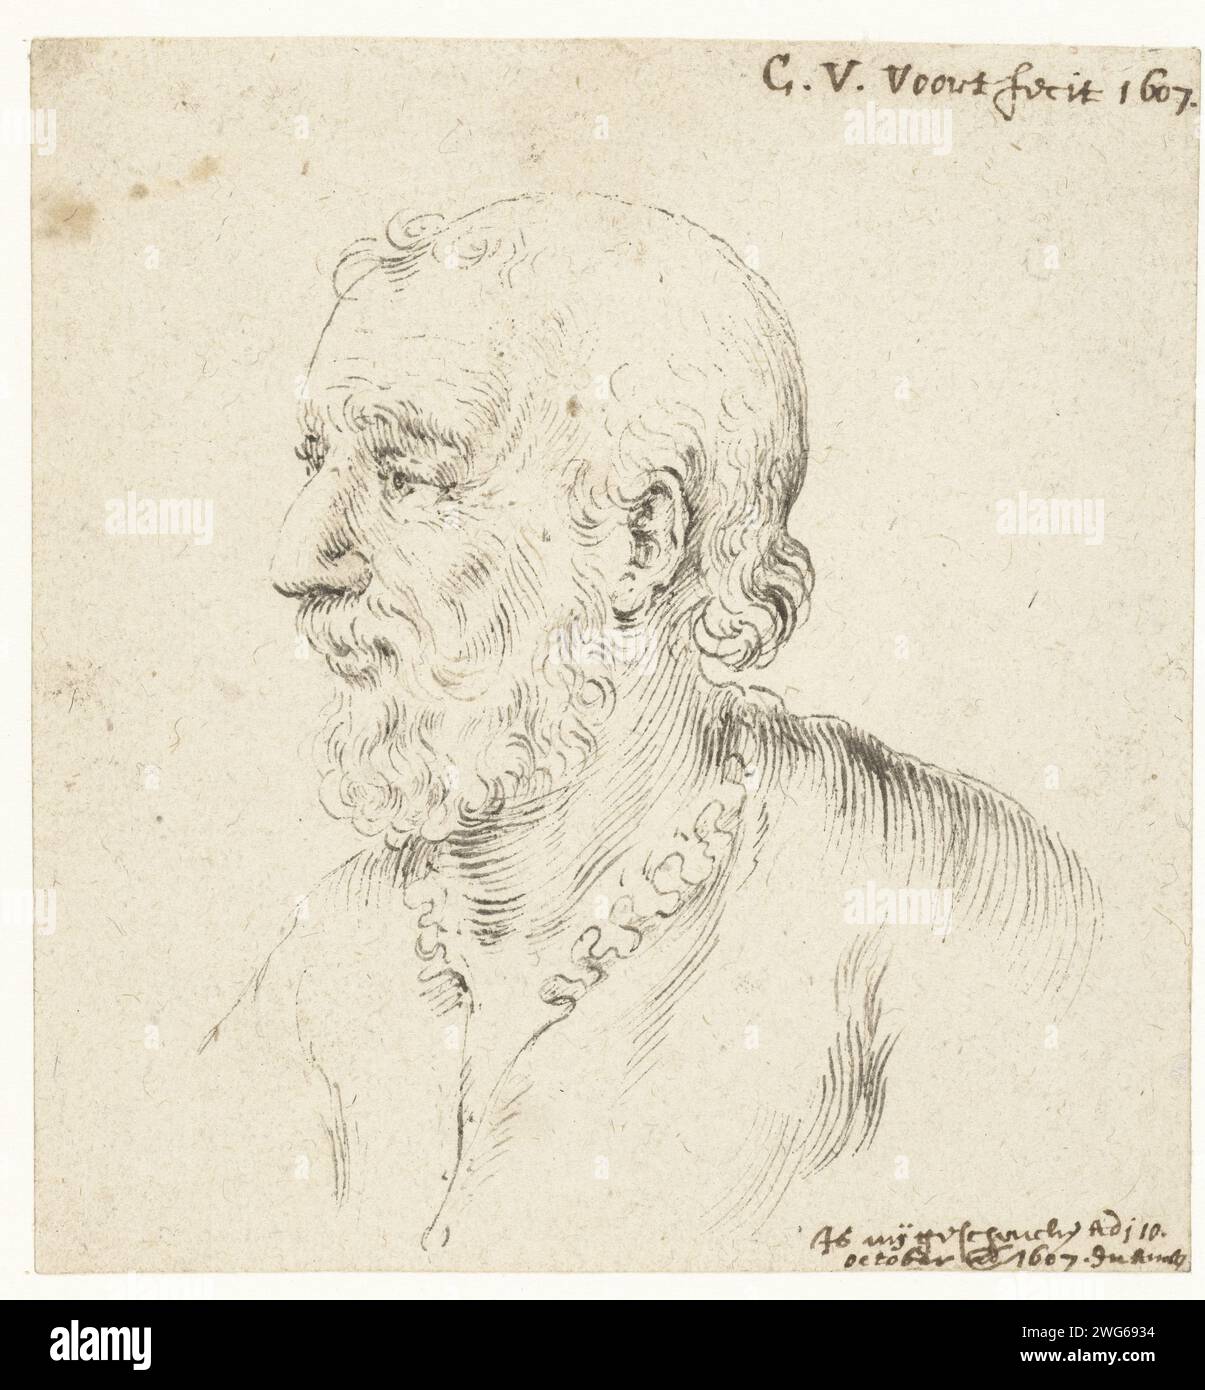 Kopf eines Mannes mit Bart, im Profil links, Cornelis van der Voort, Zeichenpapier 1607. Tintenstift historische Personen, die nicht namentlich bekannt sind. Kopf (Mensch) Stockfoto